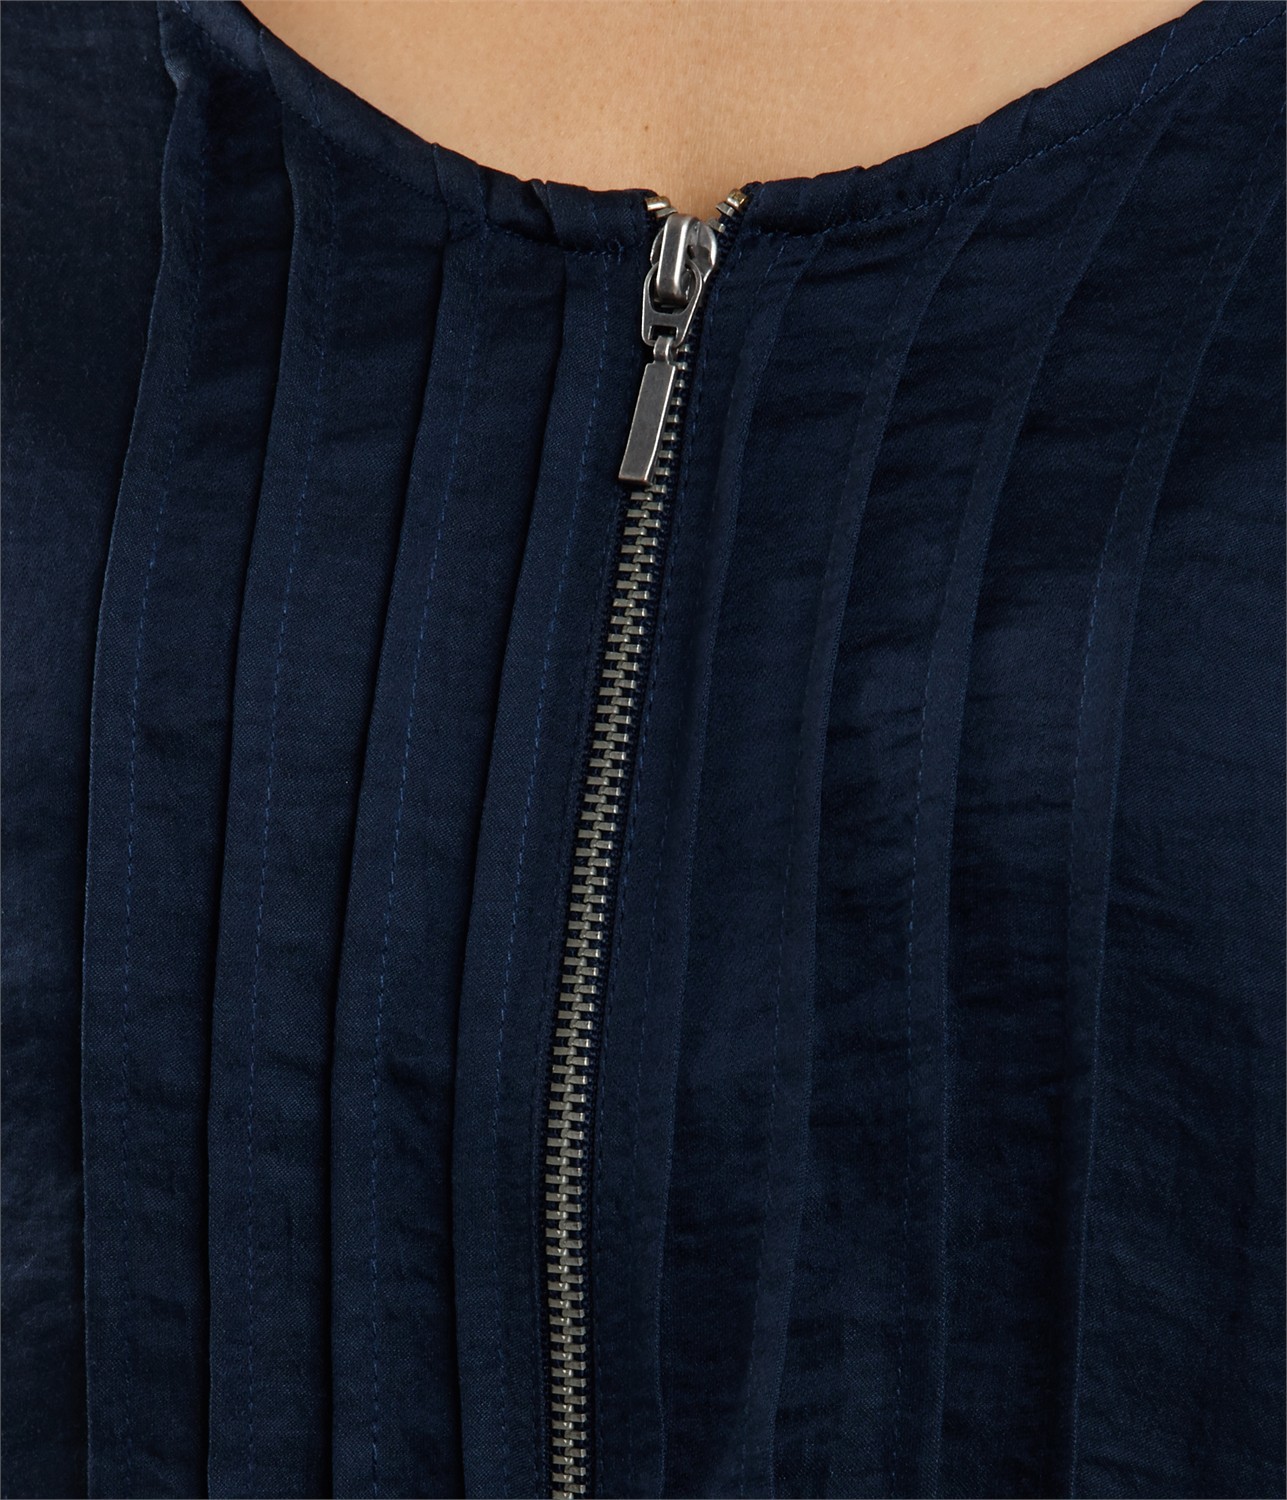 Camaieu kék ruha zipzáros dekoltázzsal 2014.6.3 fotója